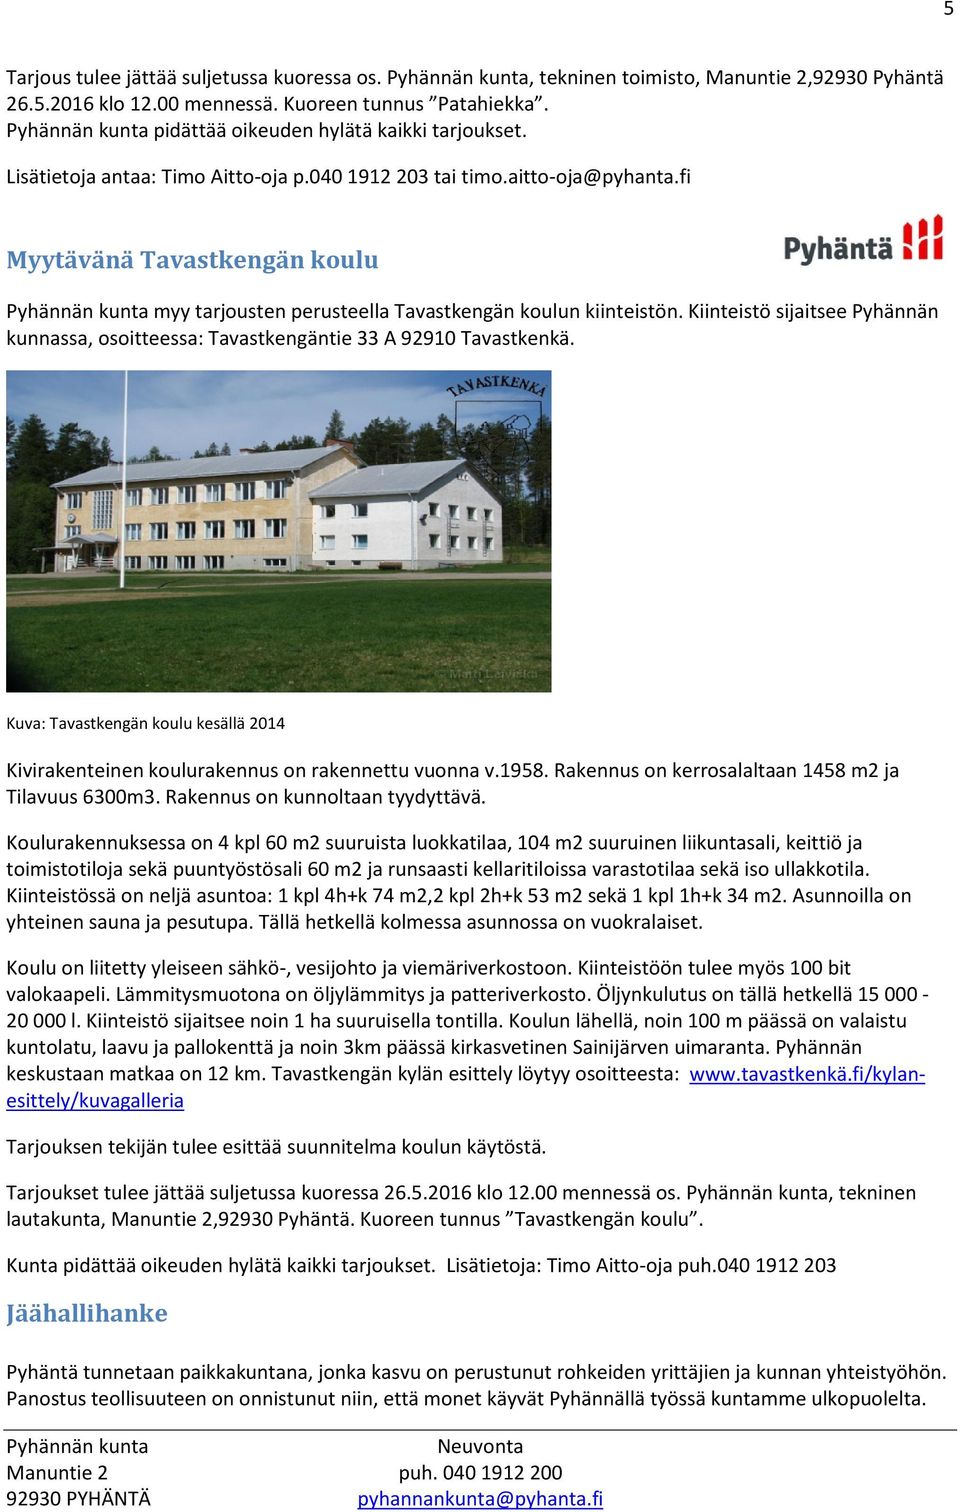 Kiinteistö sijaitsee Pyhännän kunnassa, osoitteessa: Tavastkengäntie 33 A 92910 Tavastkenkä. Kuva: Tavastkengän koulu kesällä 2014 Kivirakenteinen koulurakennus on rakennettu vuonna v.1958.